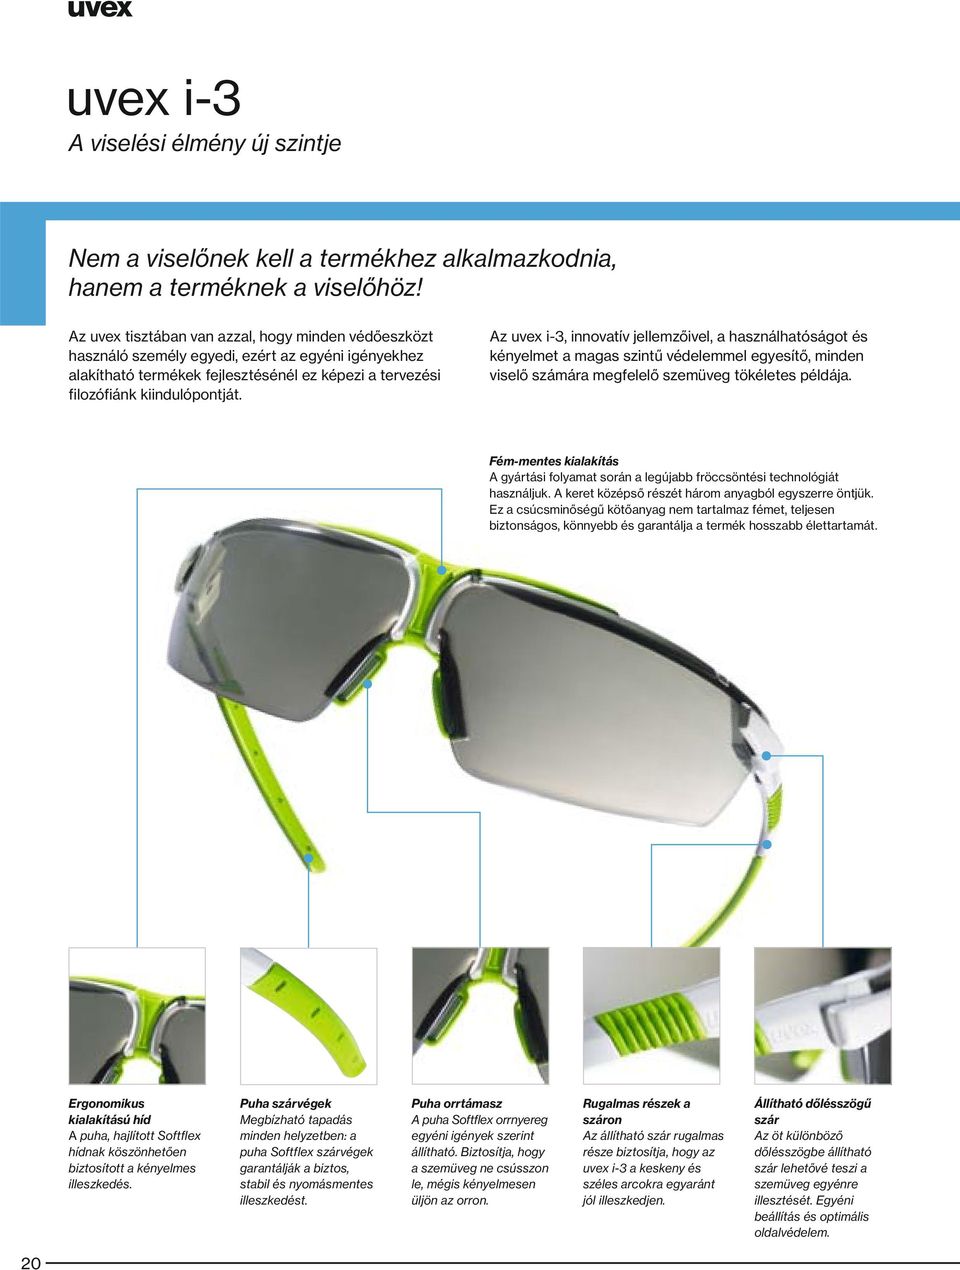 Az uvex i-3, innovatív jellemzőivel, a használhatóságot és kényelmet a magas szintű védelemmel egyesítő, minden viselő számára megfelelő szemüveg tökéletes példája.